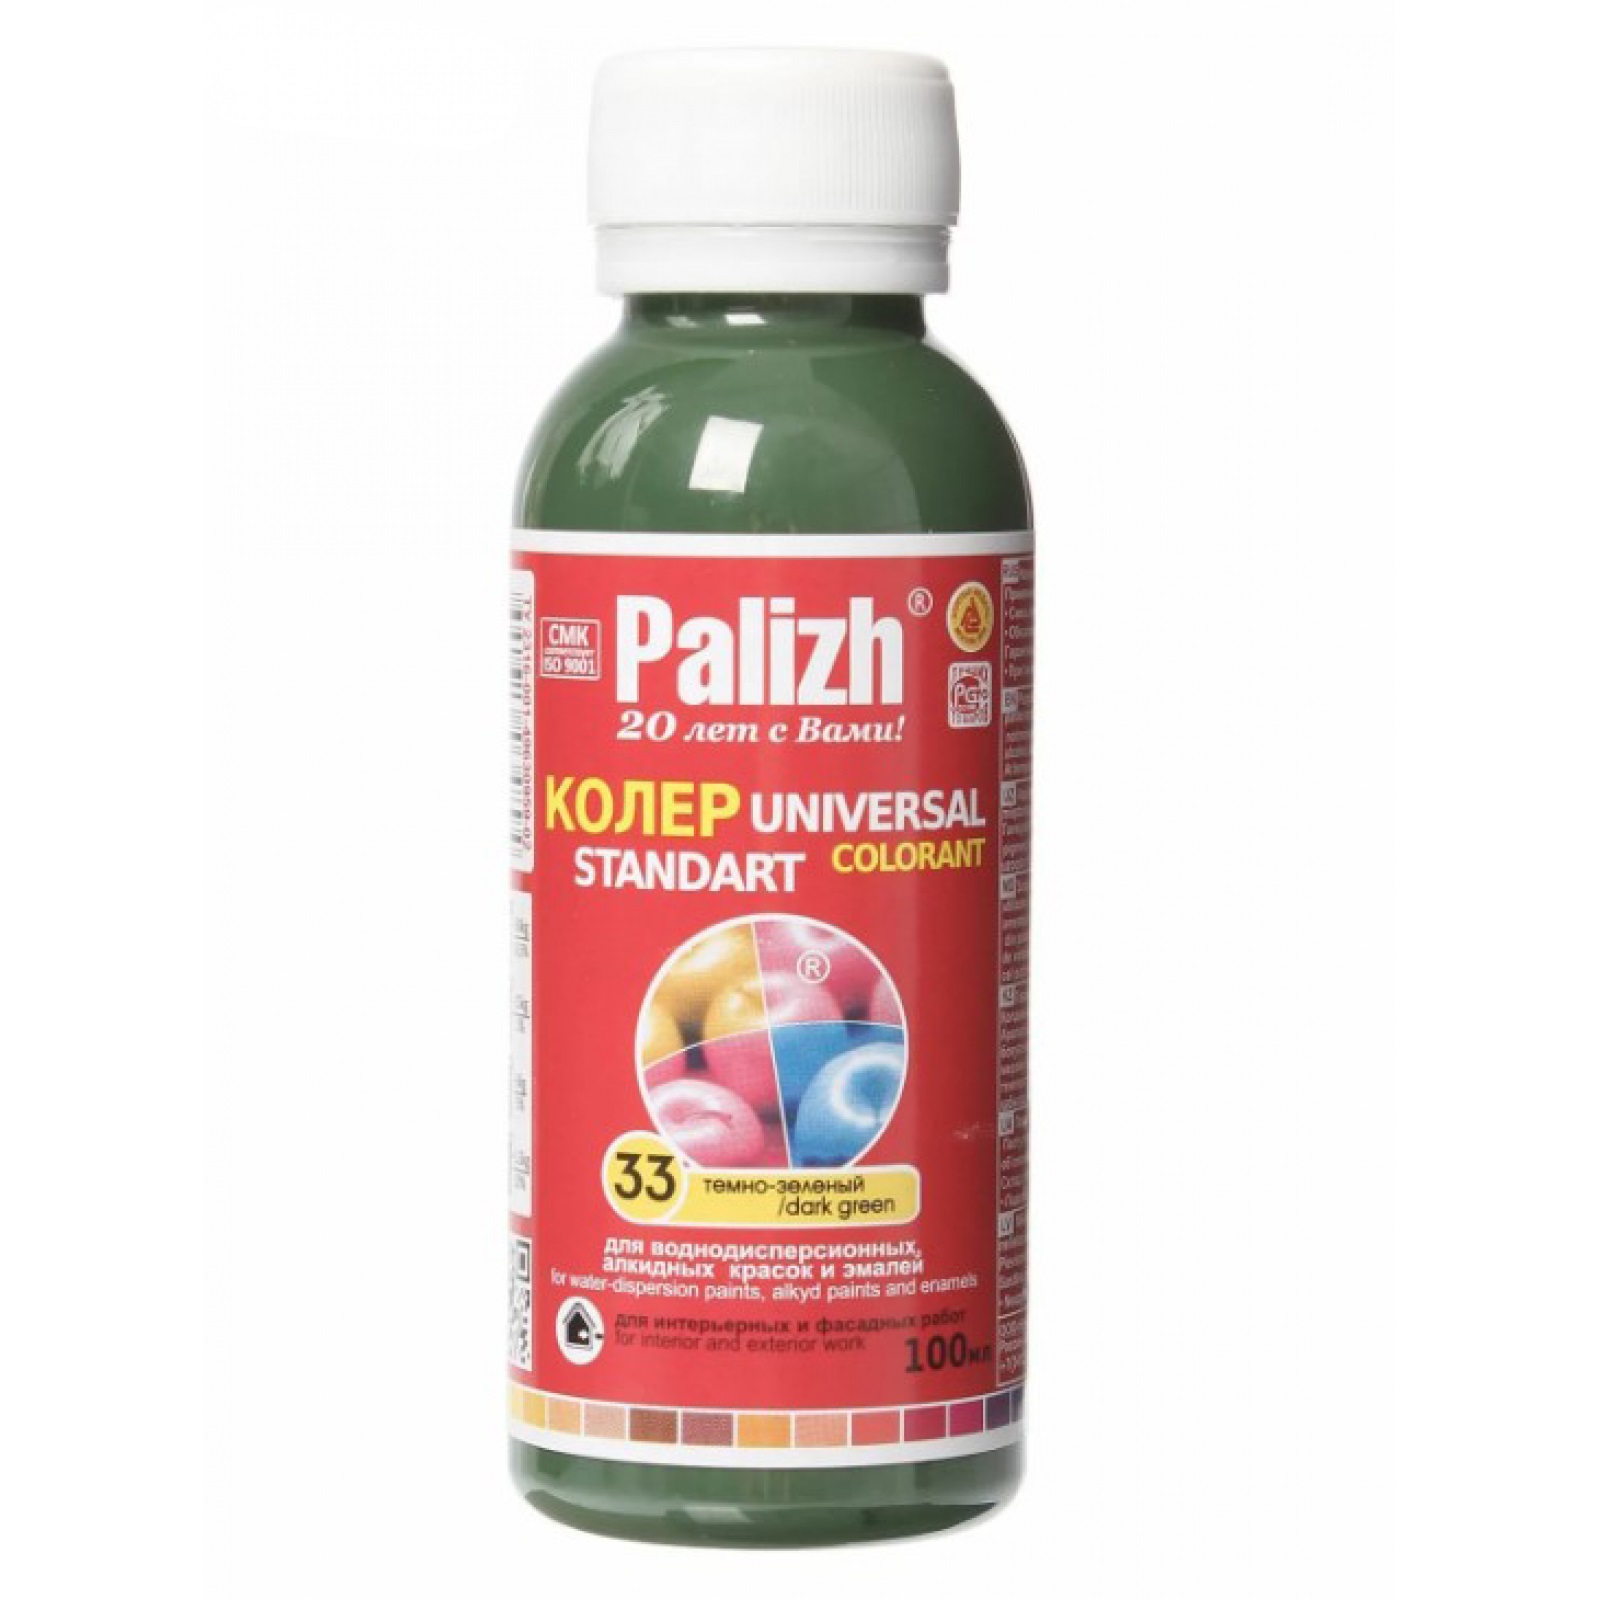 Паста универсальная колеровочная Palizh темно-зеленый - 100 мл паста универсальная колеровочная palizh пурпурный 100 мл